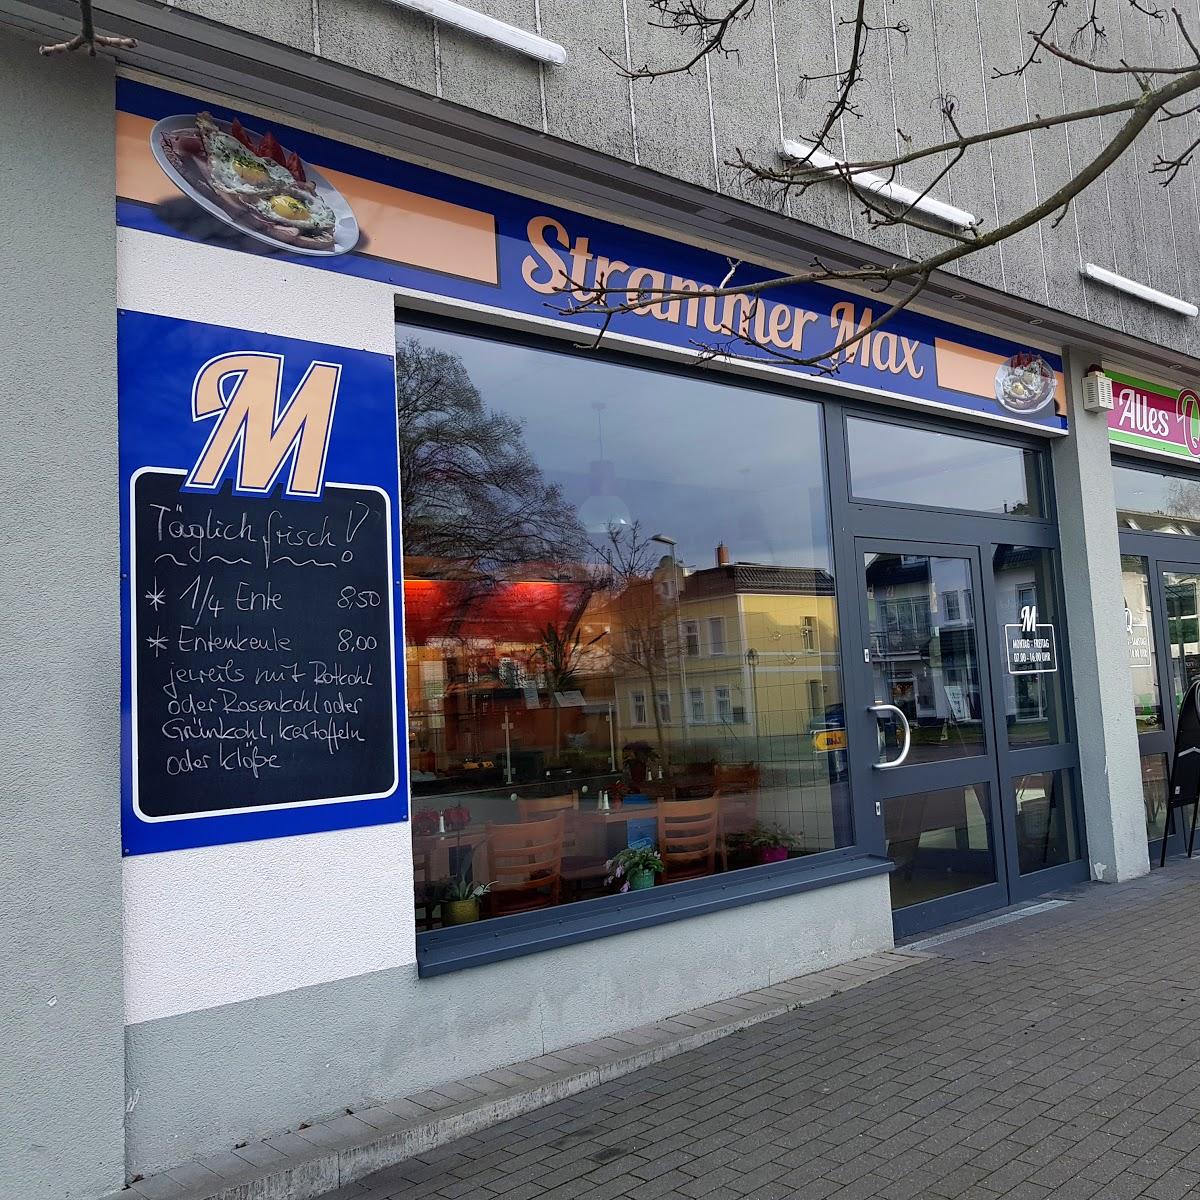 Restaurant "Strammer Max" in Wandlitz